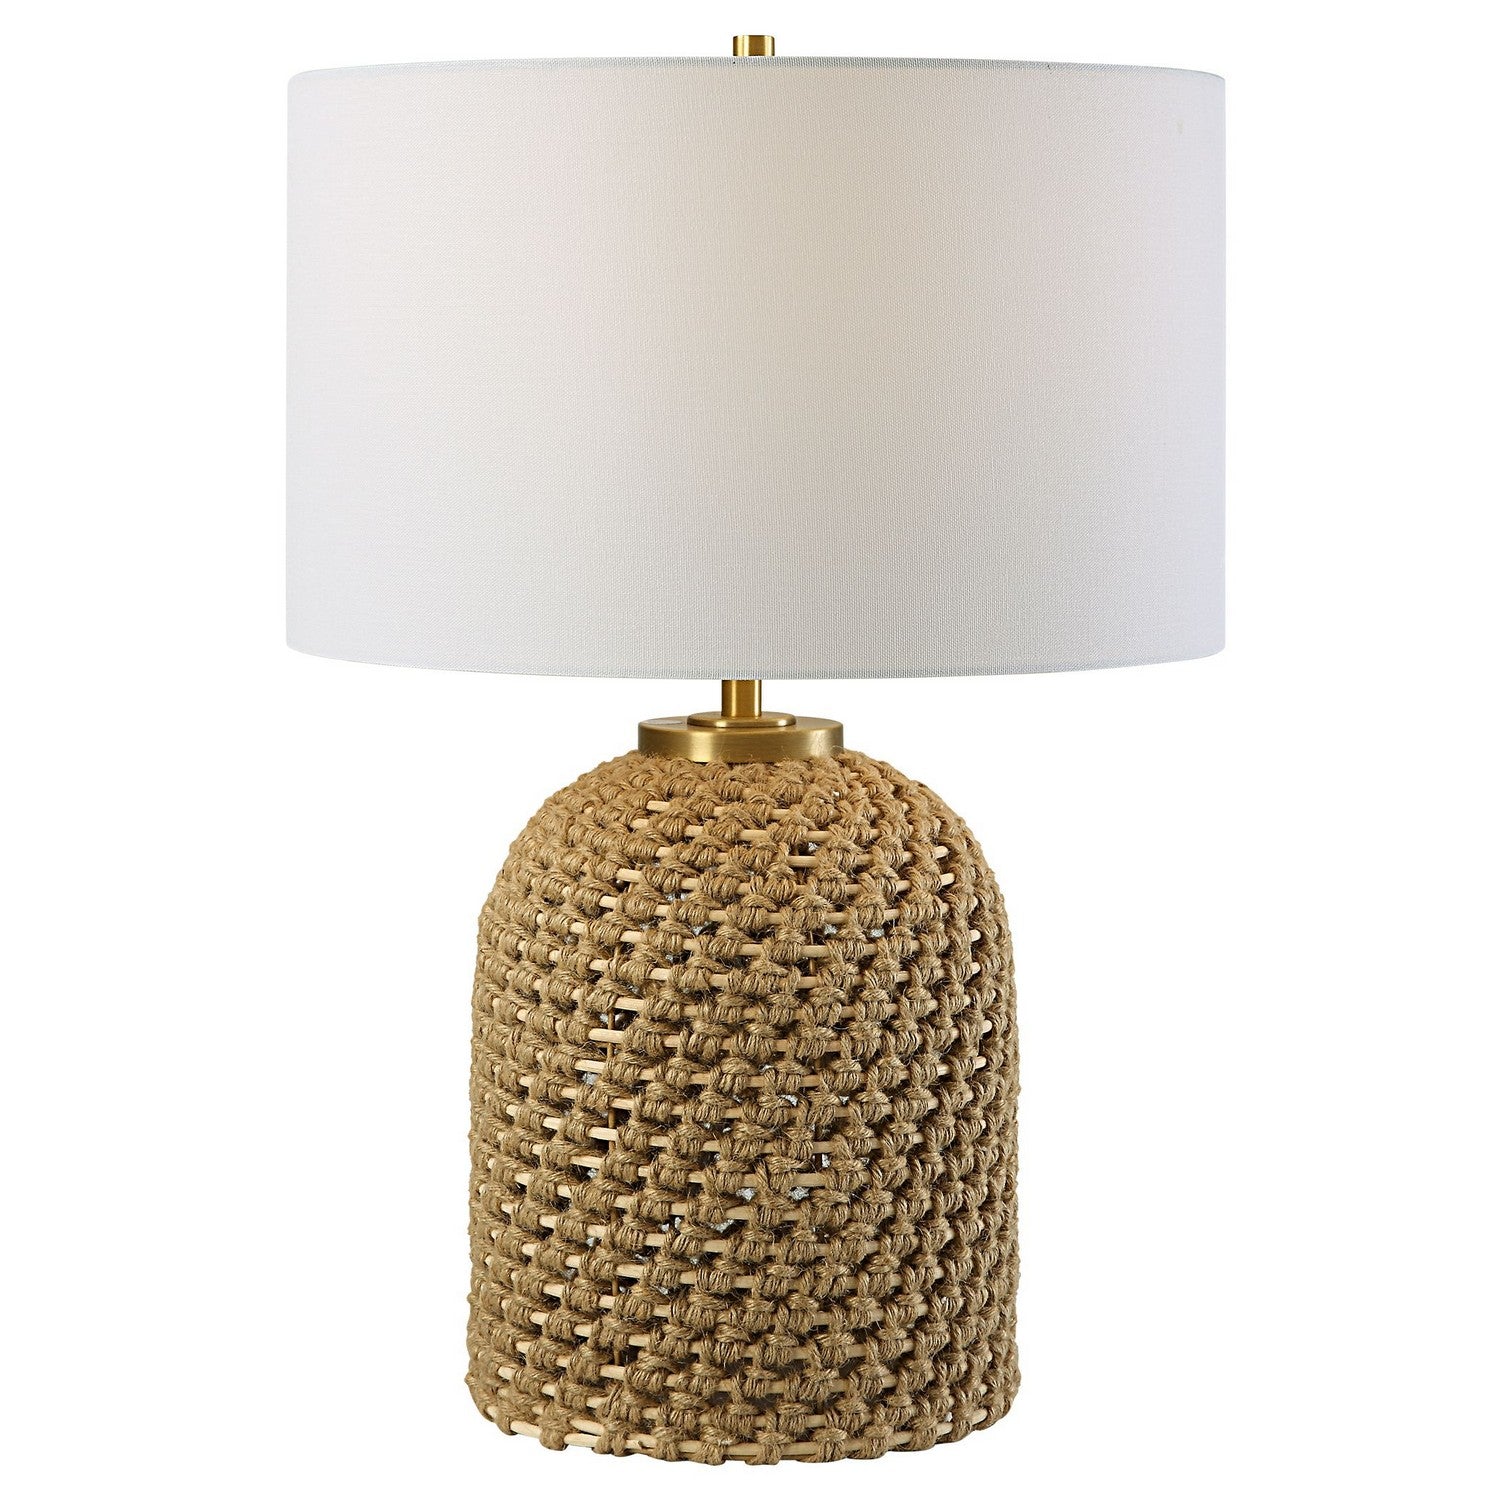 Uttermost - 30243 - One Light Table Lamp - Kendari - Antiqued Brass